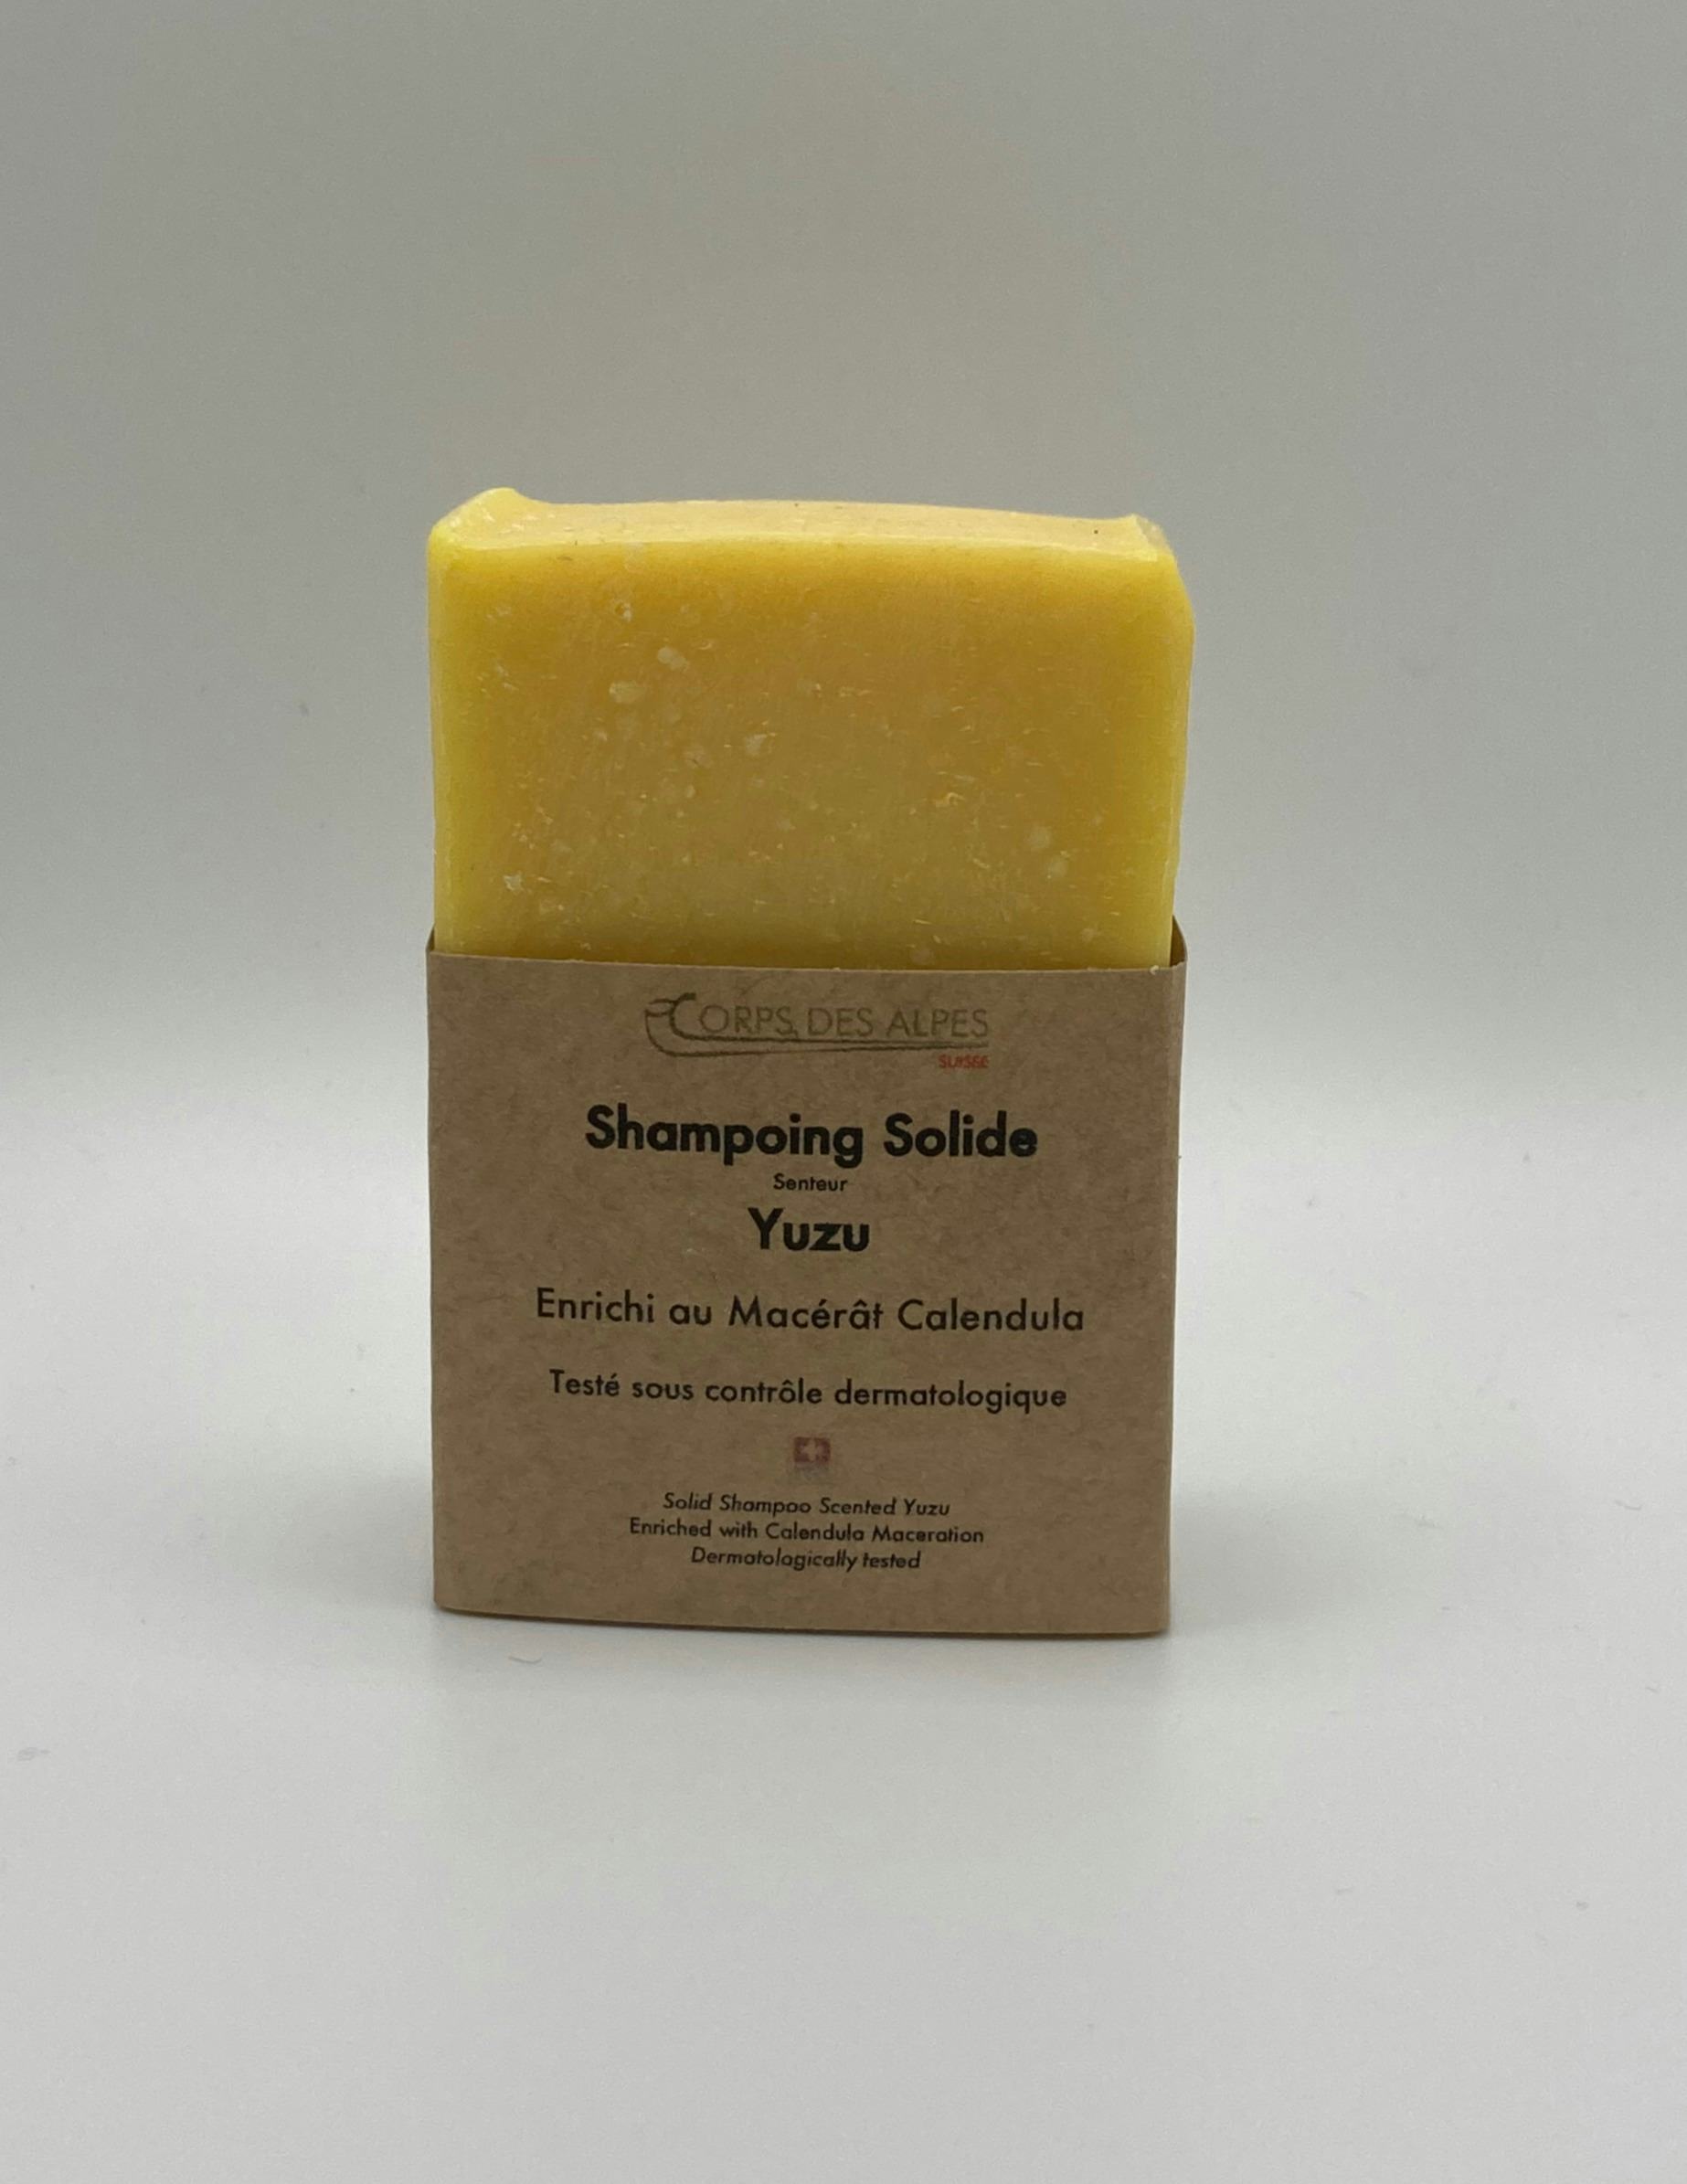 Shampoing solide senteur Yuzu, handwerkliches Produkt für den Direktverkauf in der Schweiz